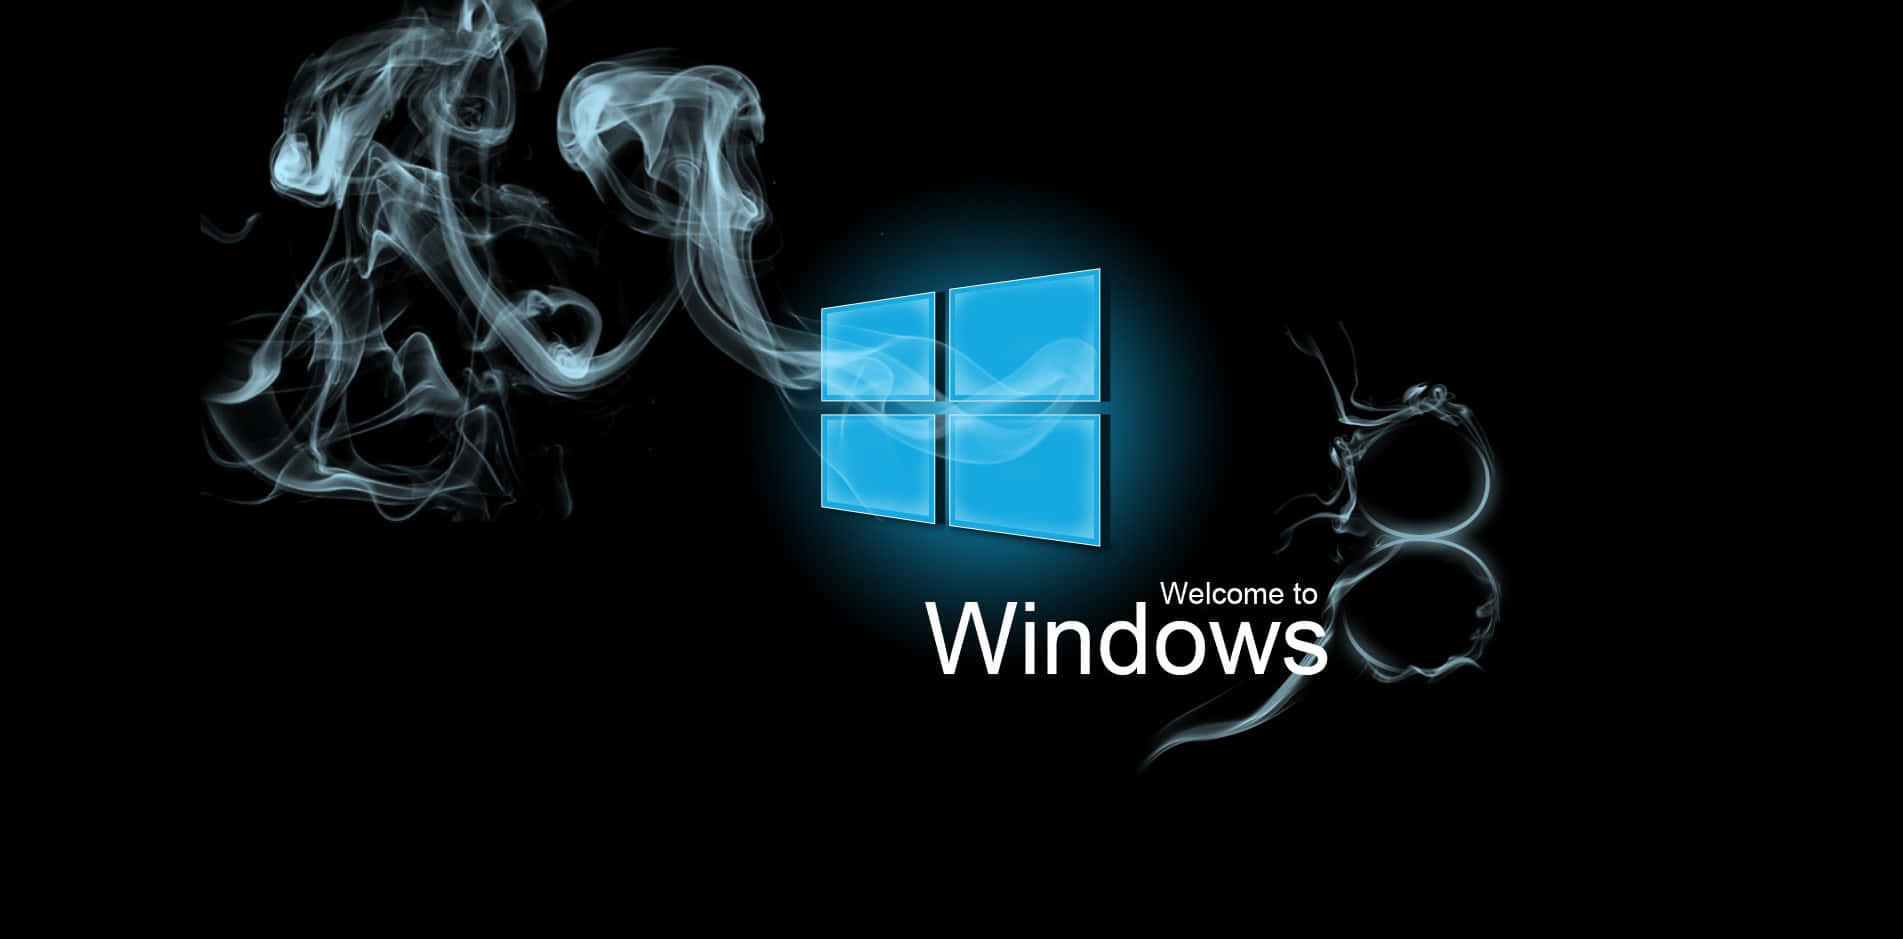 Windows8 Bakgrund I Storlek 1903 X 939